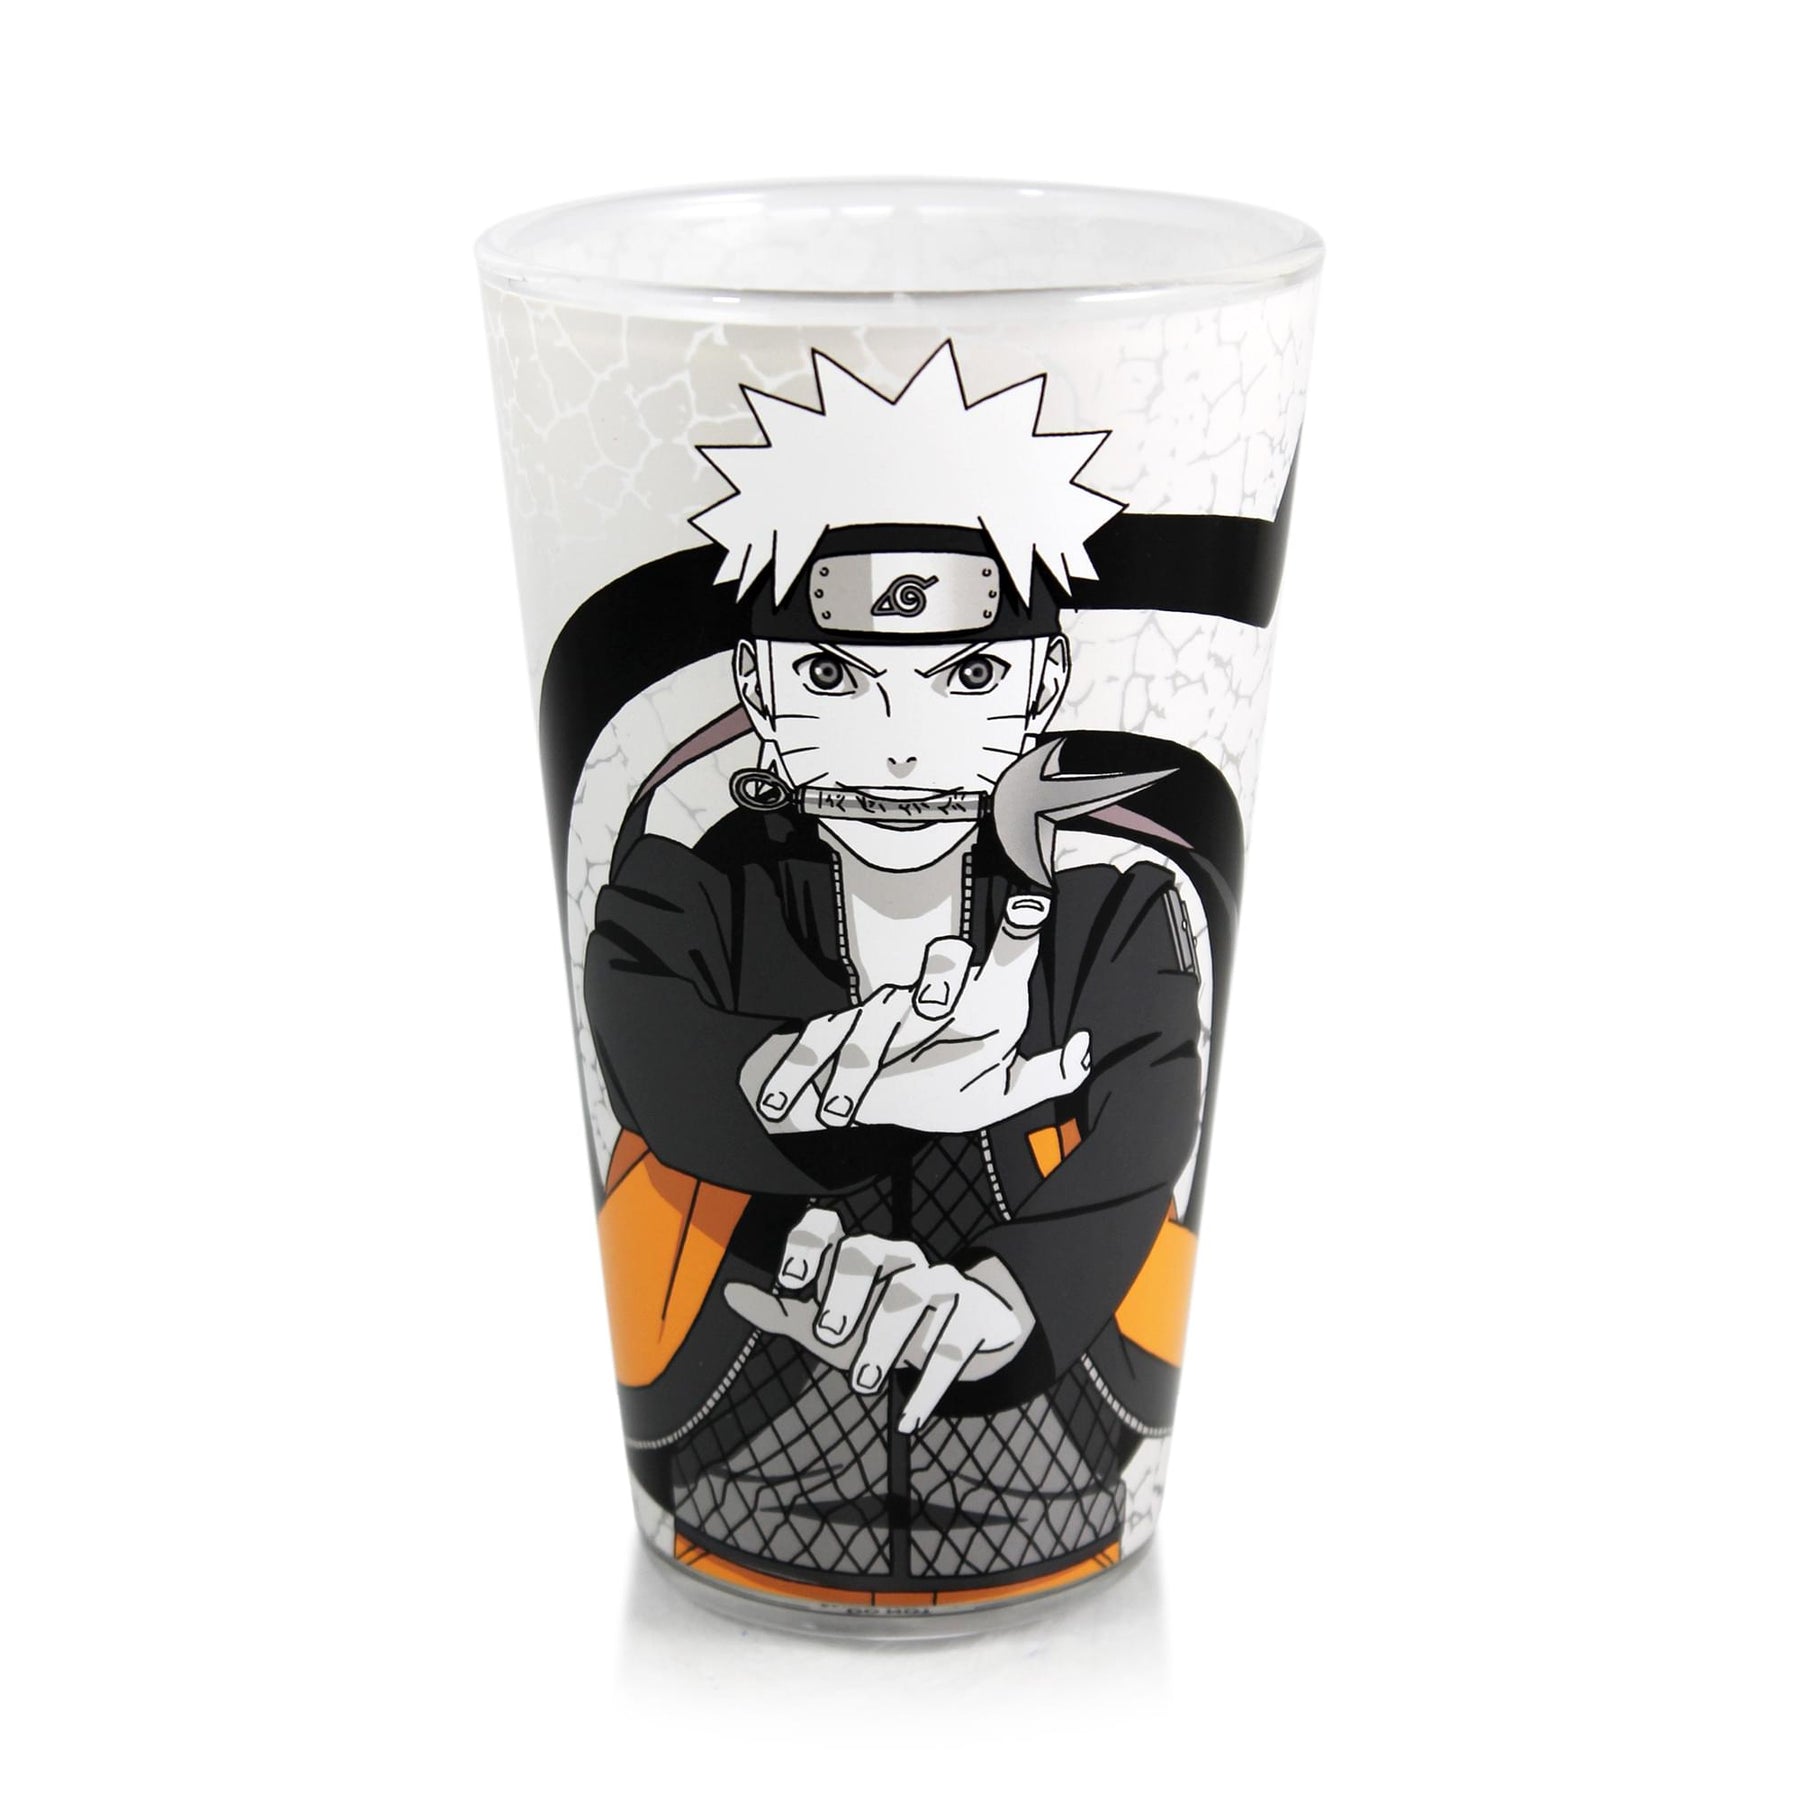 Naruto and Kakashi Hand Sign 16oz Pint Glass Set of 2